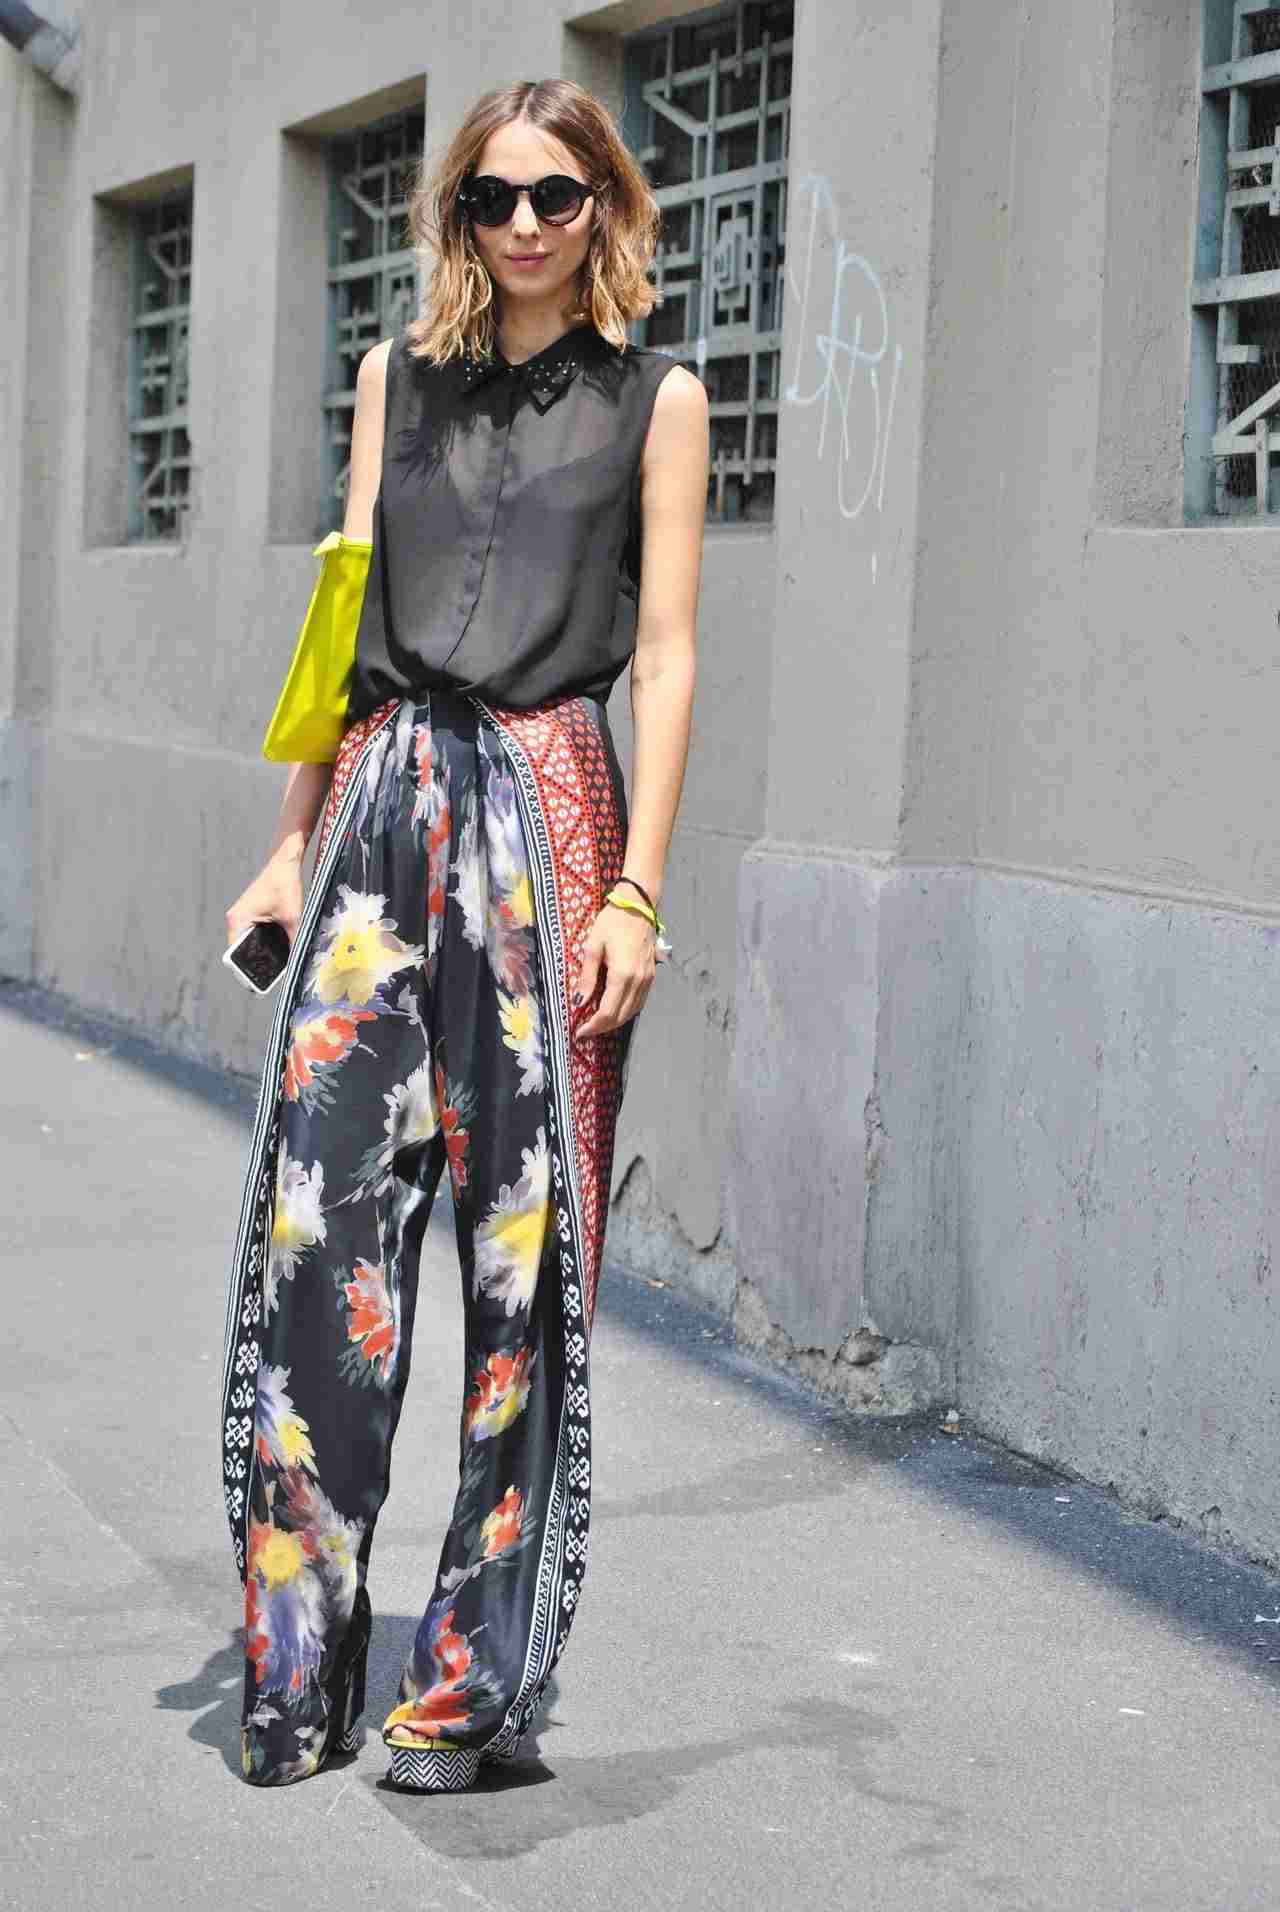 Weite Hose mit Blumenmuster kombinieren schwarze Hemdbluse Sommer Outfit Modetrends